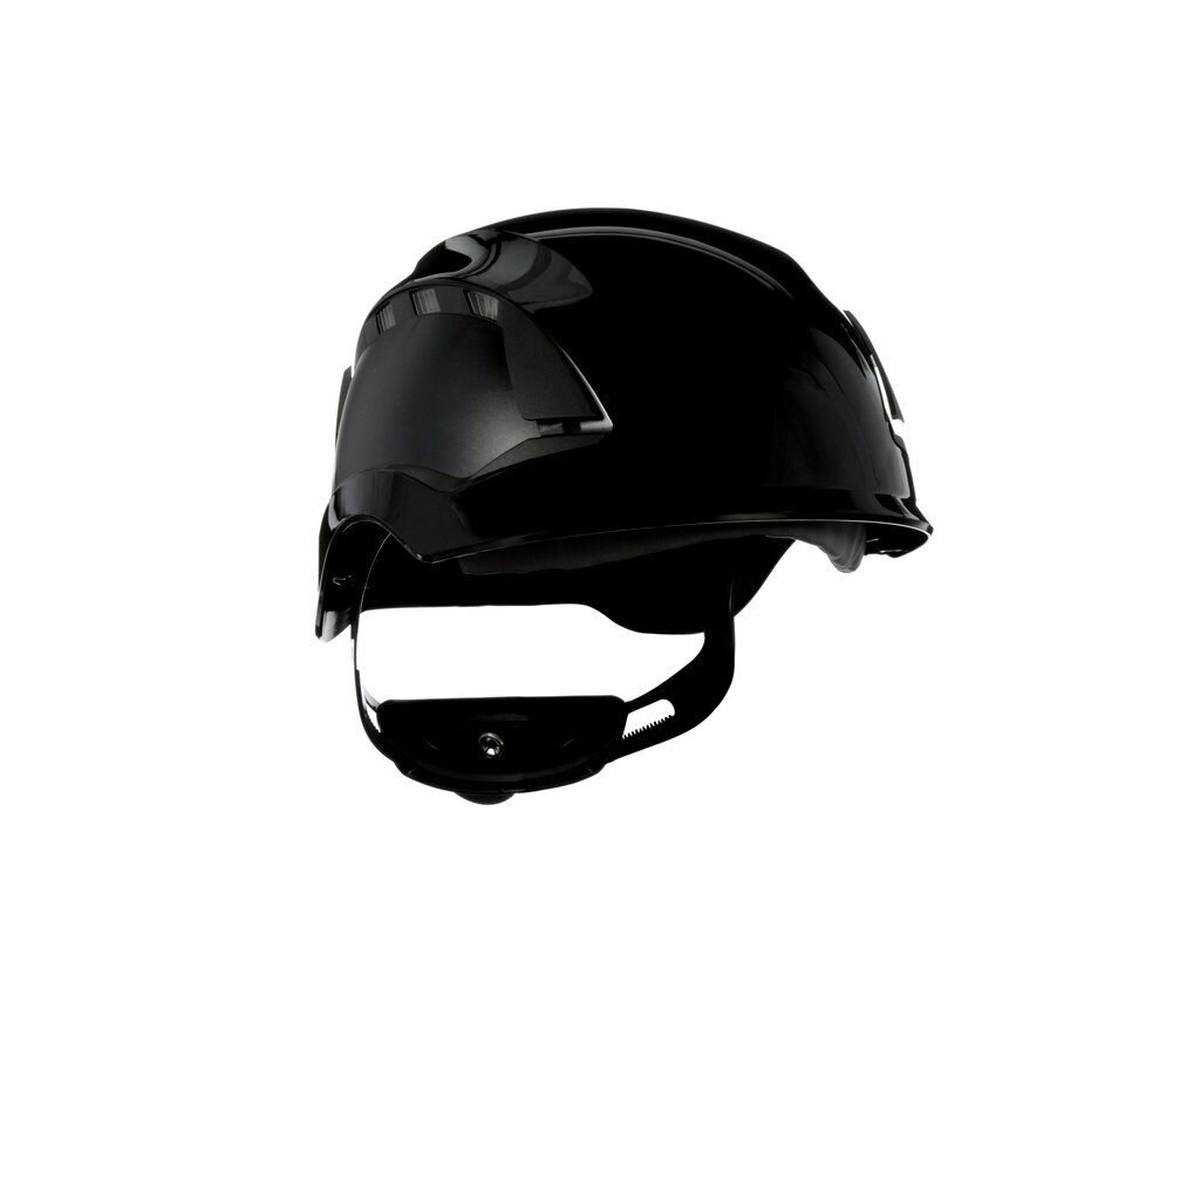 3M SecureFit safety helmet, X5512V-CE, black, ventilated, CE